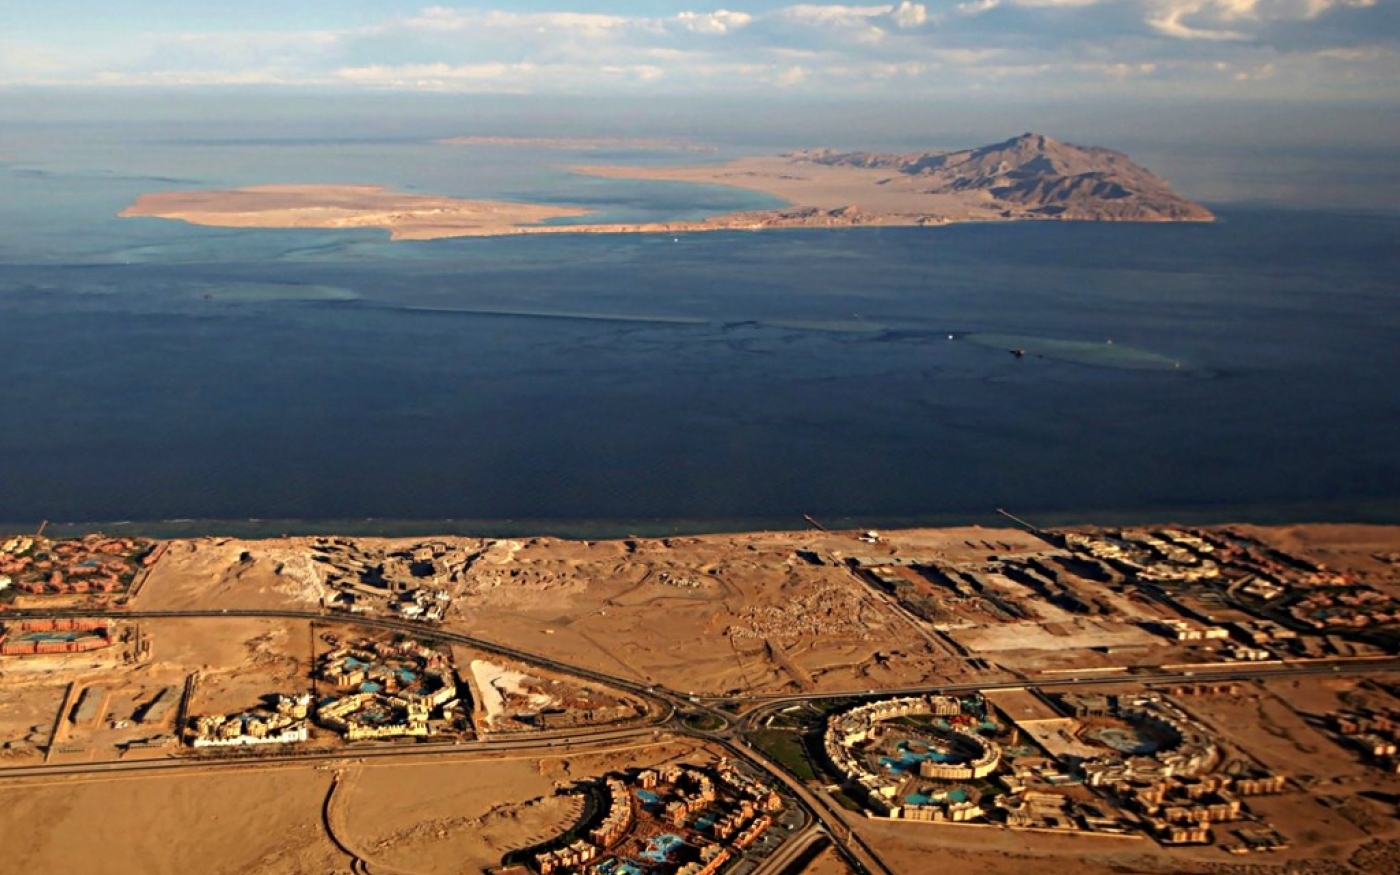 Tiran et Sanafir se situent dans le détroit de Tiran, entre la péninsule égyptienne du Sinaï et l’Arabie saoudite (AFP)